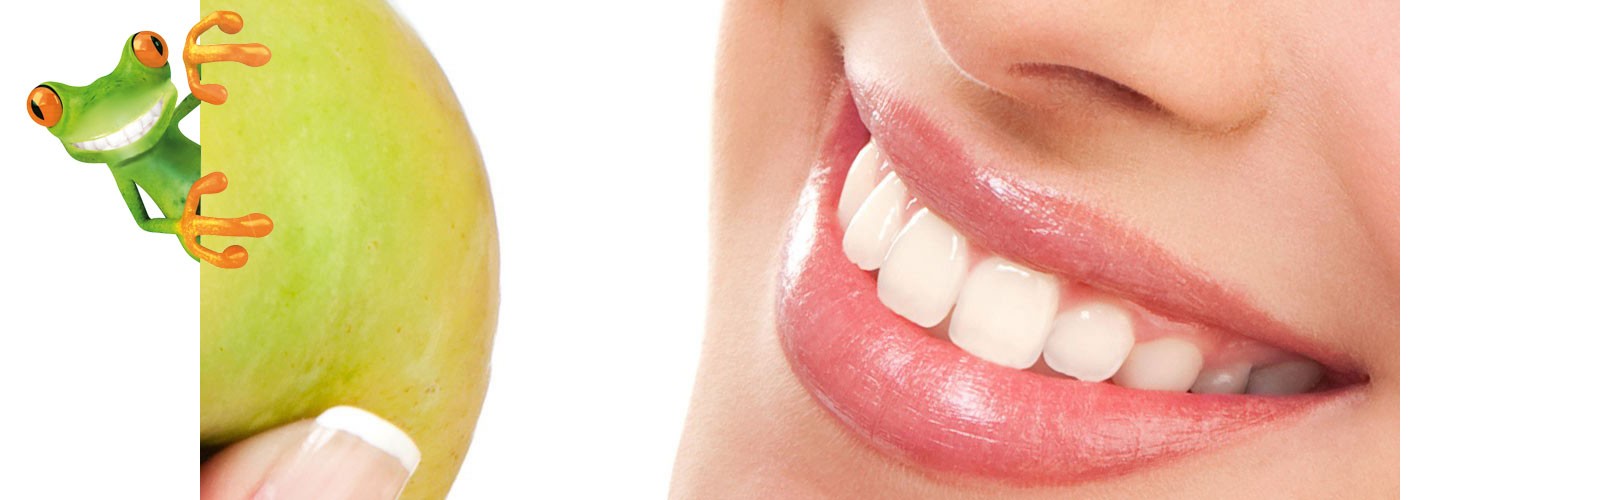 Der Erhalt Ihrer Zahngesundheit ist für uns ein wichtiges Anliegen und hat daher oberste Priorität. 